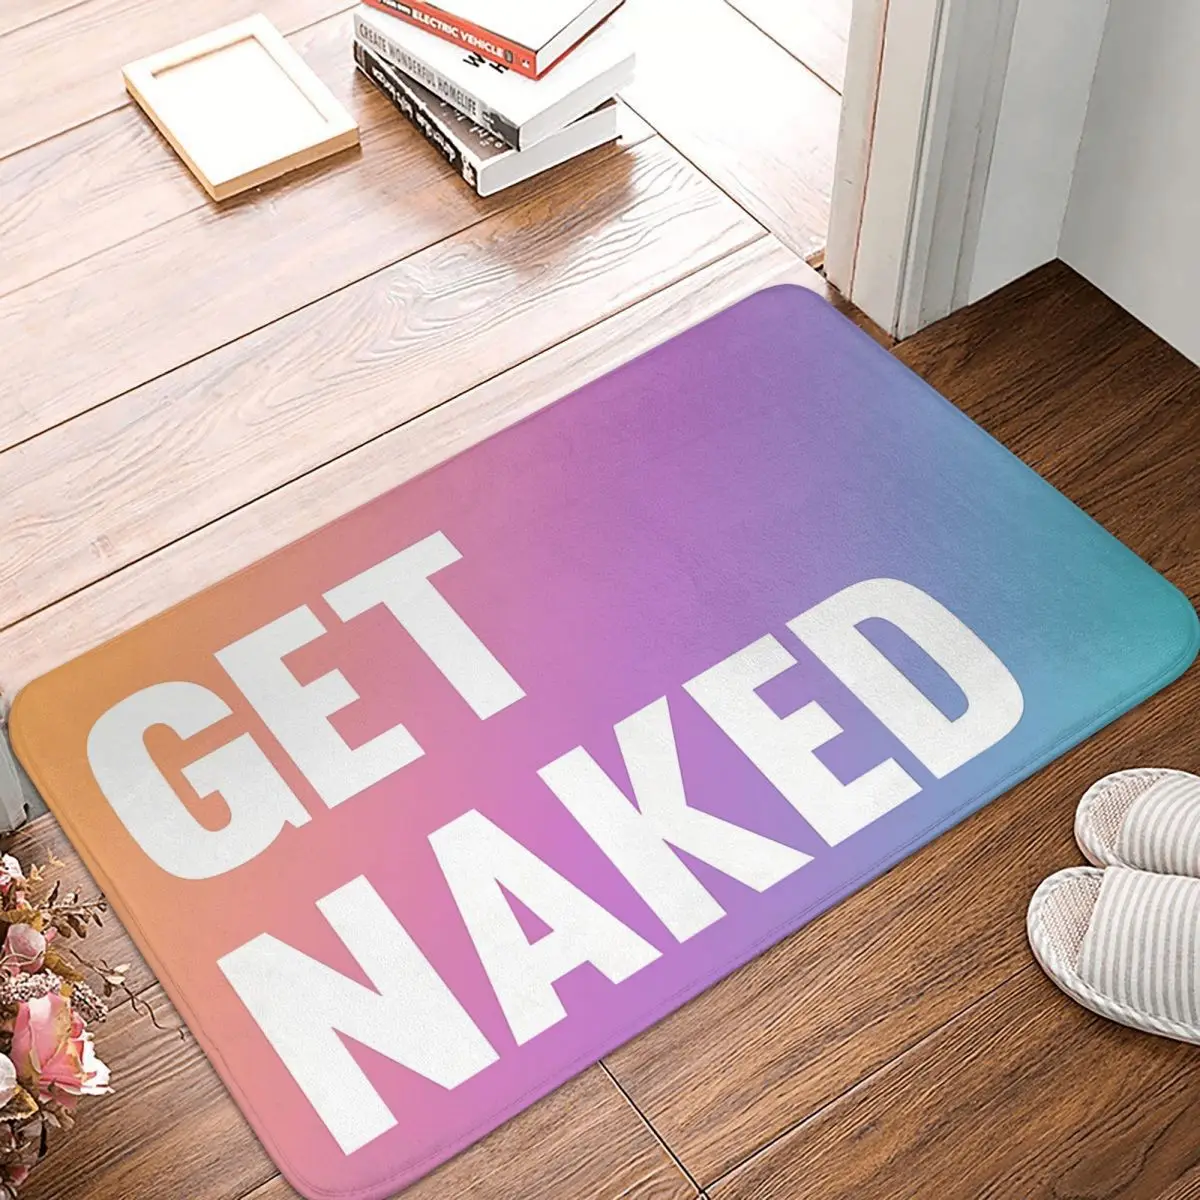 

Get Naked Bedroom Mat Colorful Doormat Kitchen Carpet Entrance Door Rug Home Decoration